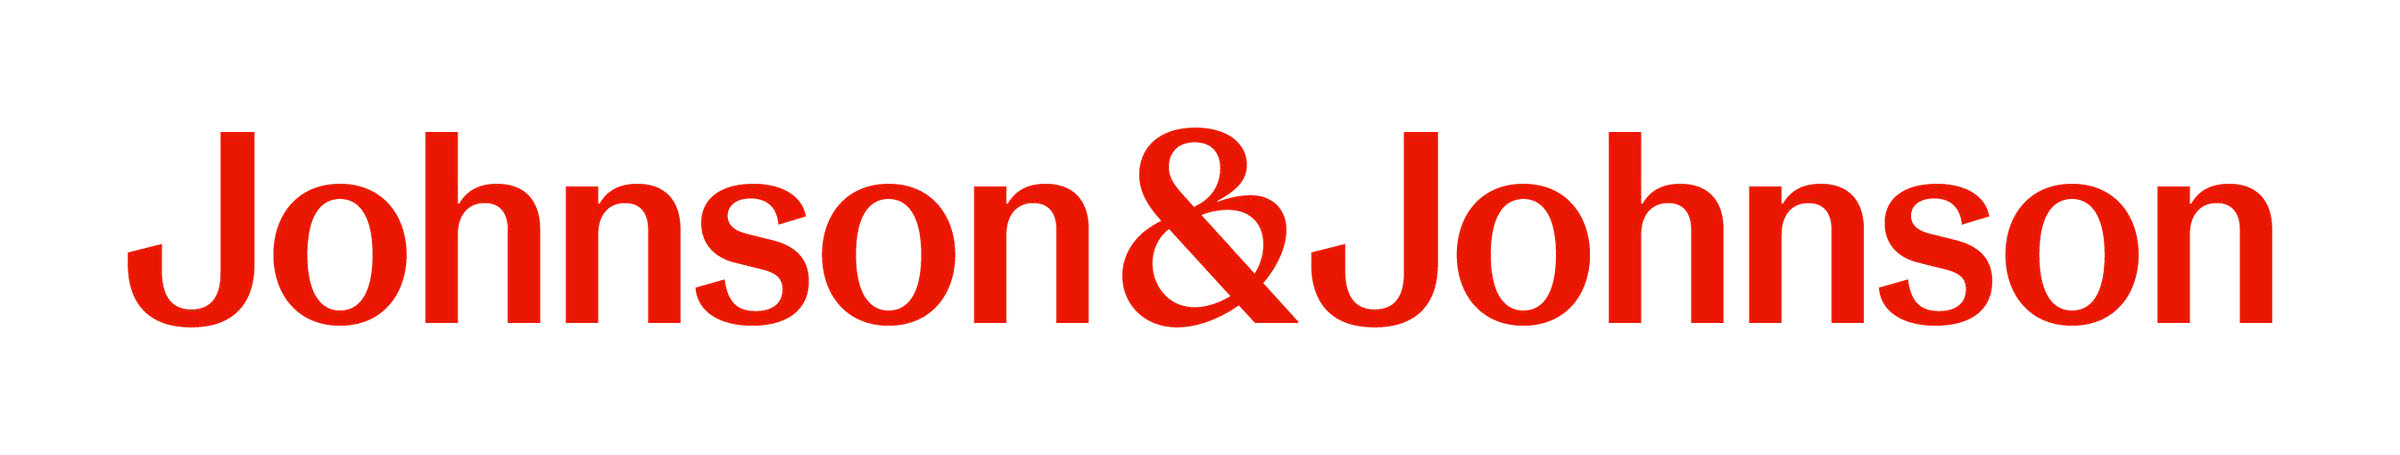 Logo Johnson&Johnson.jpg (105 KB)